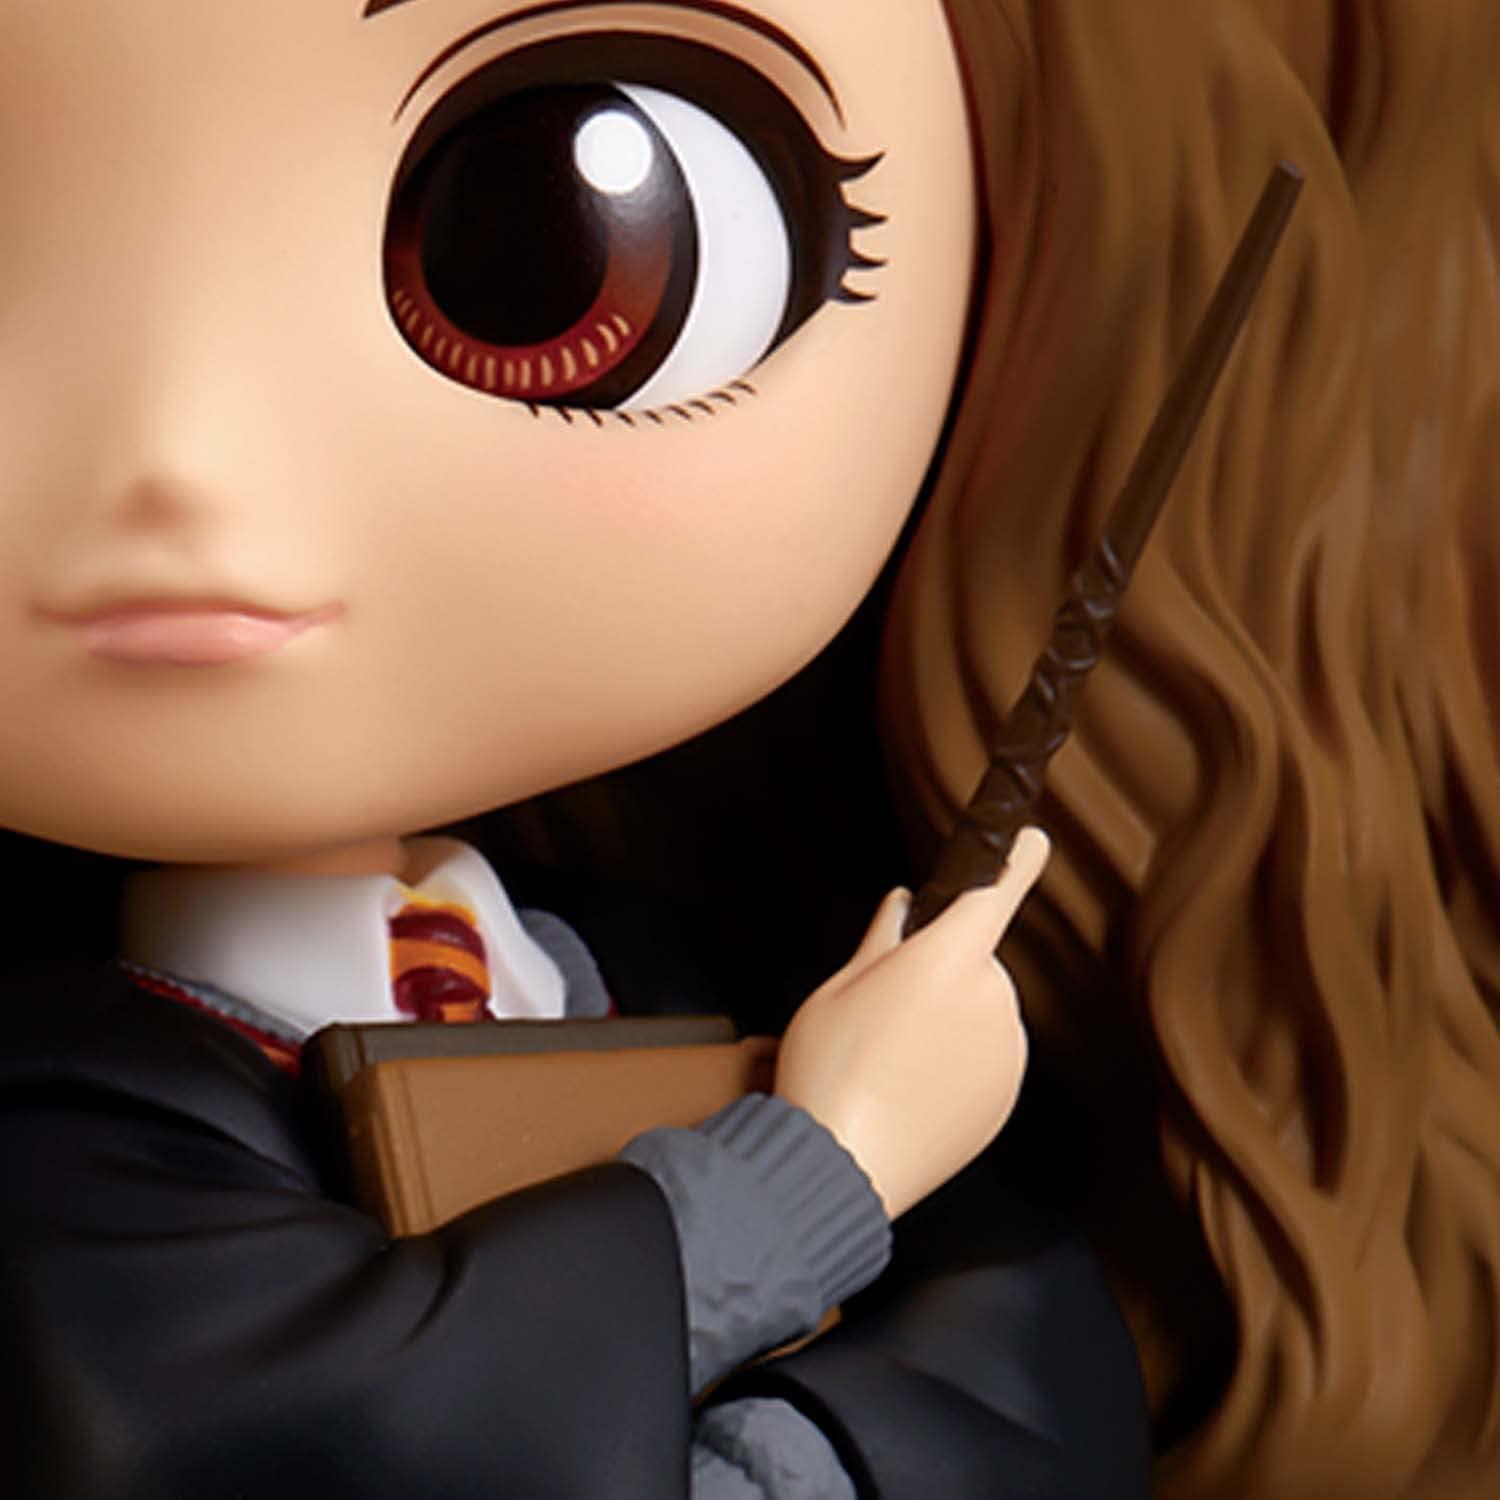 Action Figure - QPosket Hermione vers. A 14 cm - HARRY POTTER - Magic Dreams Store